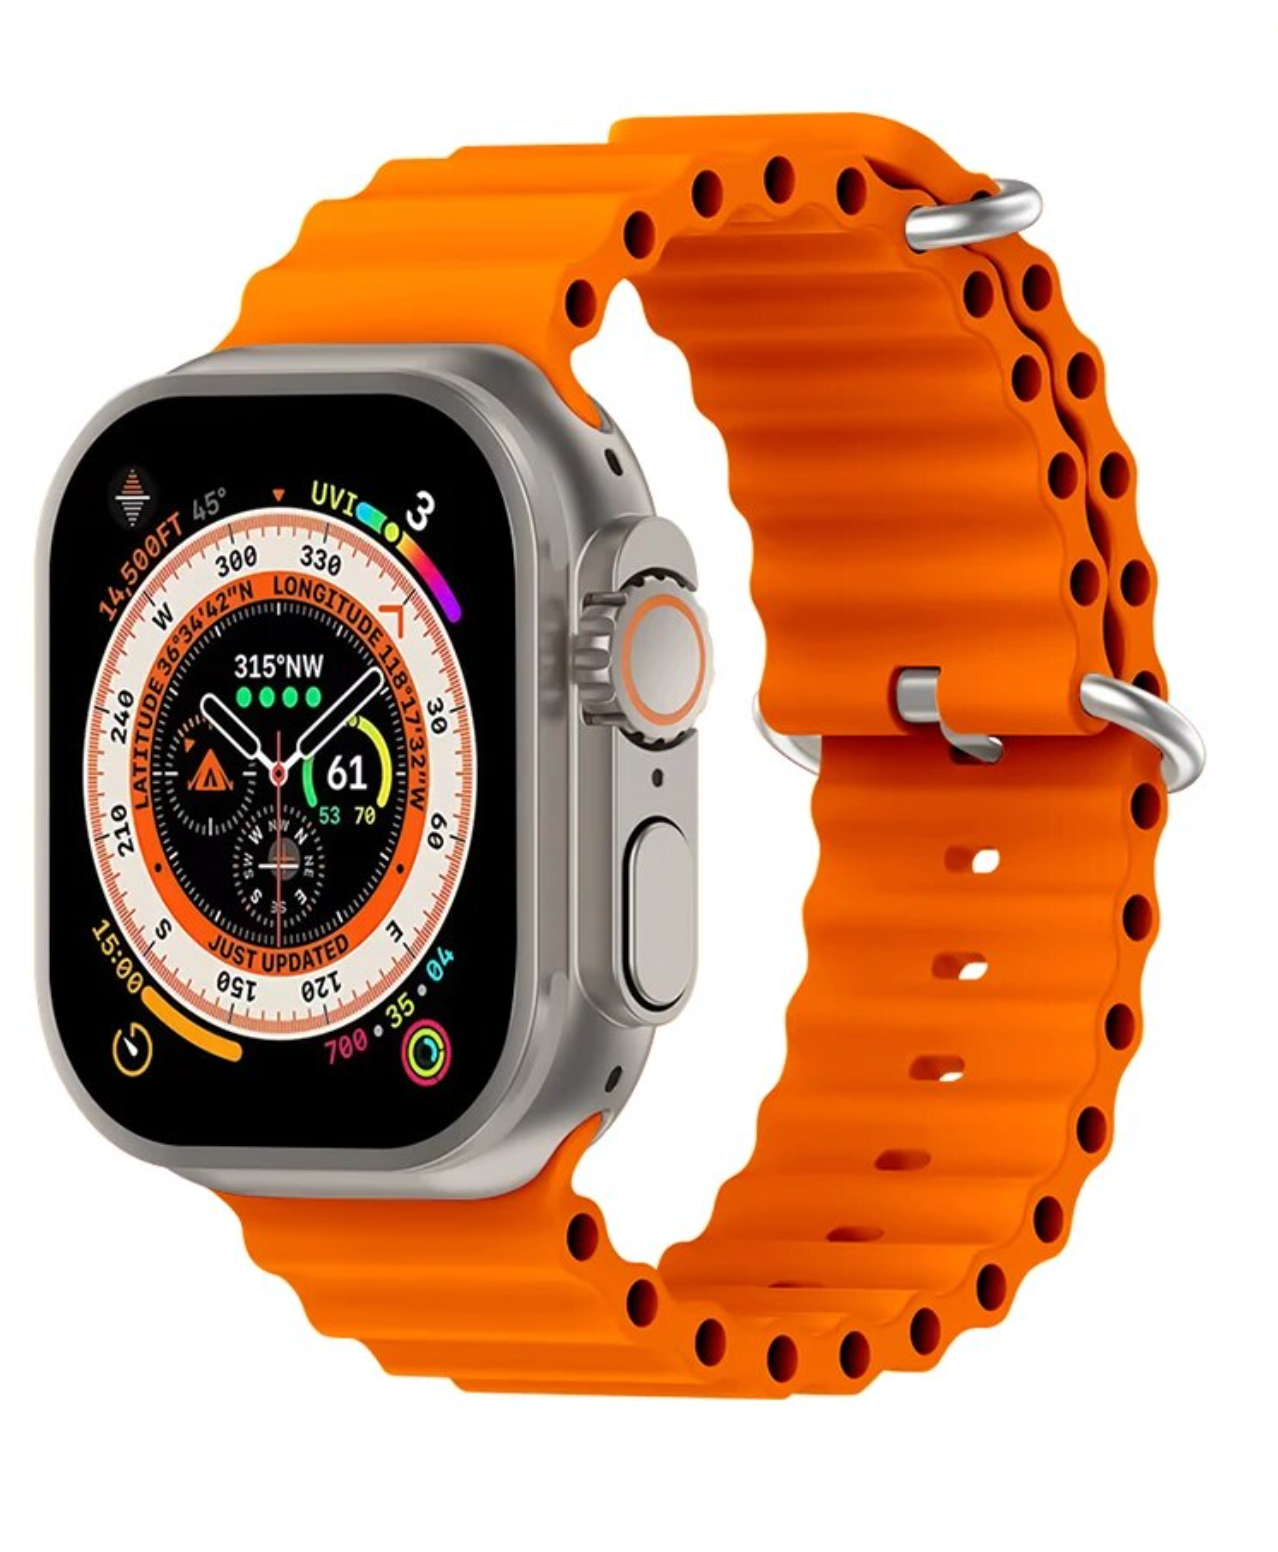 Gadget generico smart watch  h11 ultra plus 49 mm con pulsera color naranja y case